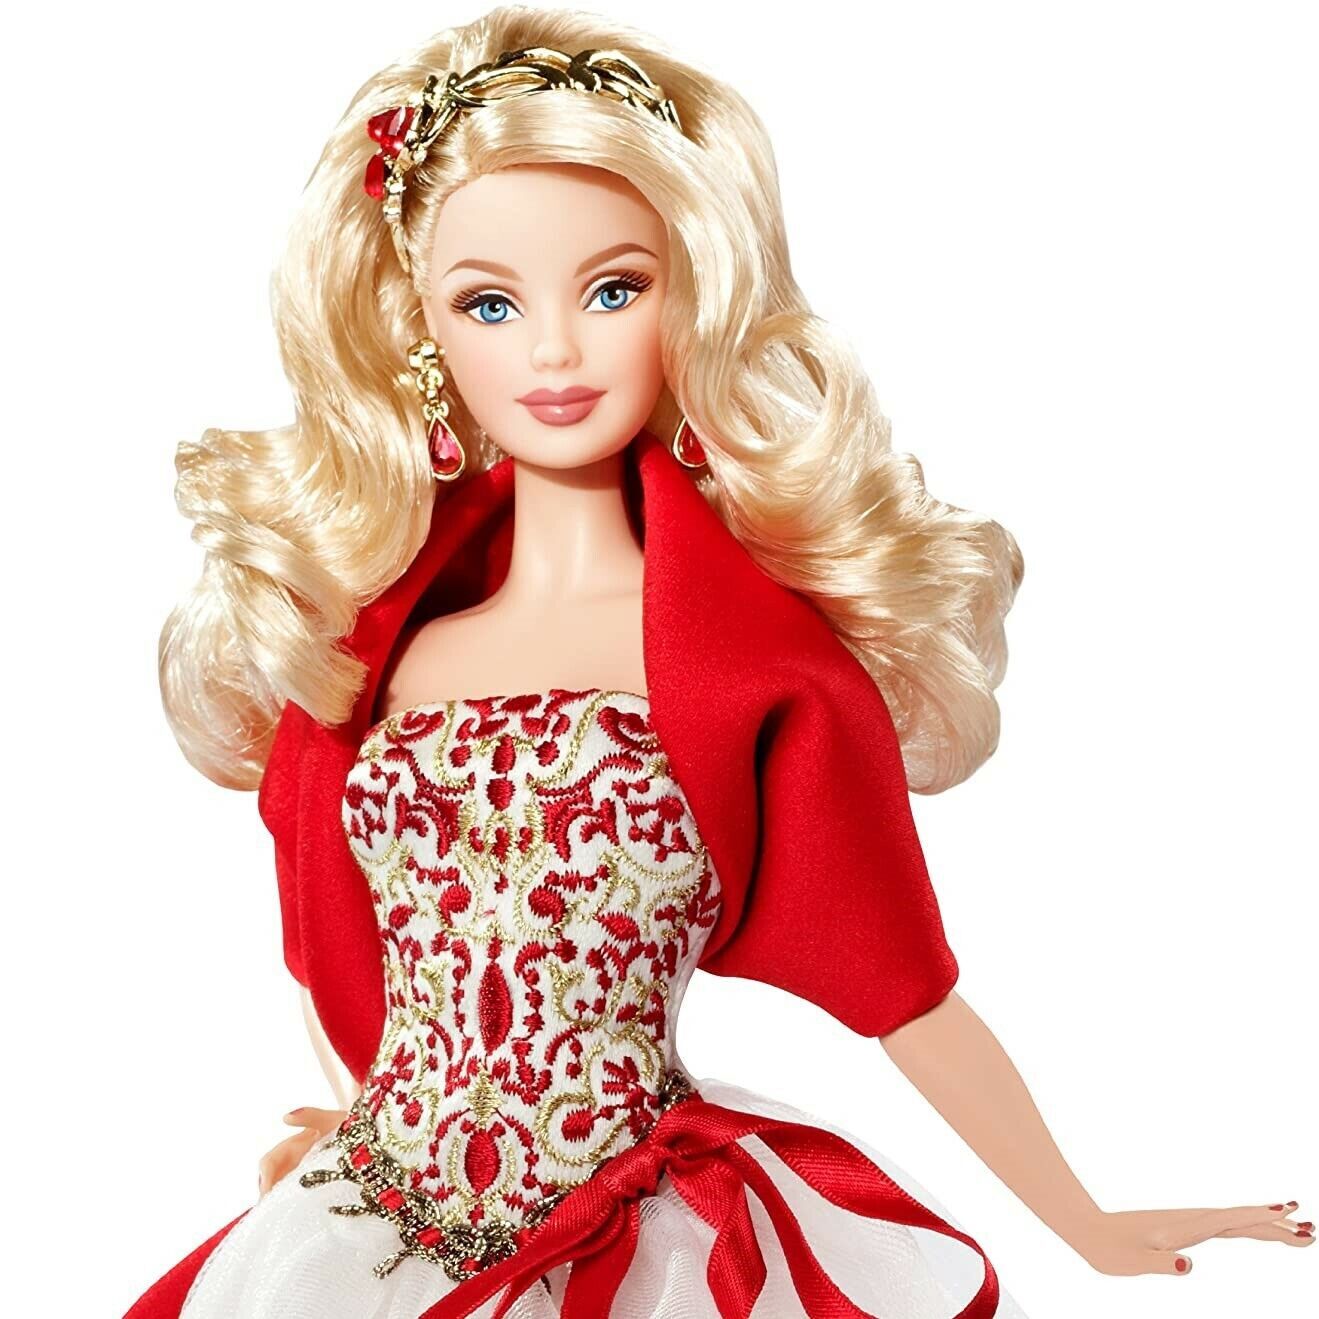 Барби holiday. Кукла Барби Холидей. Барби Холидей 2010. Кукла коллекционная Барби праздничная 2015 Barbie Collector 2015 Holiday Doll. Кукла Barbie 2010 Holiday (Барби праздничная 2010 блондинка).